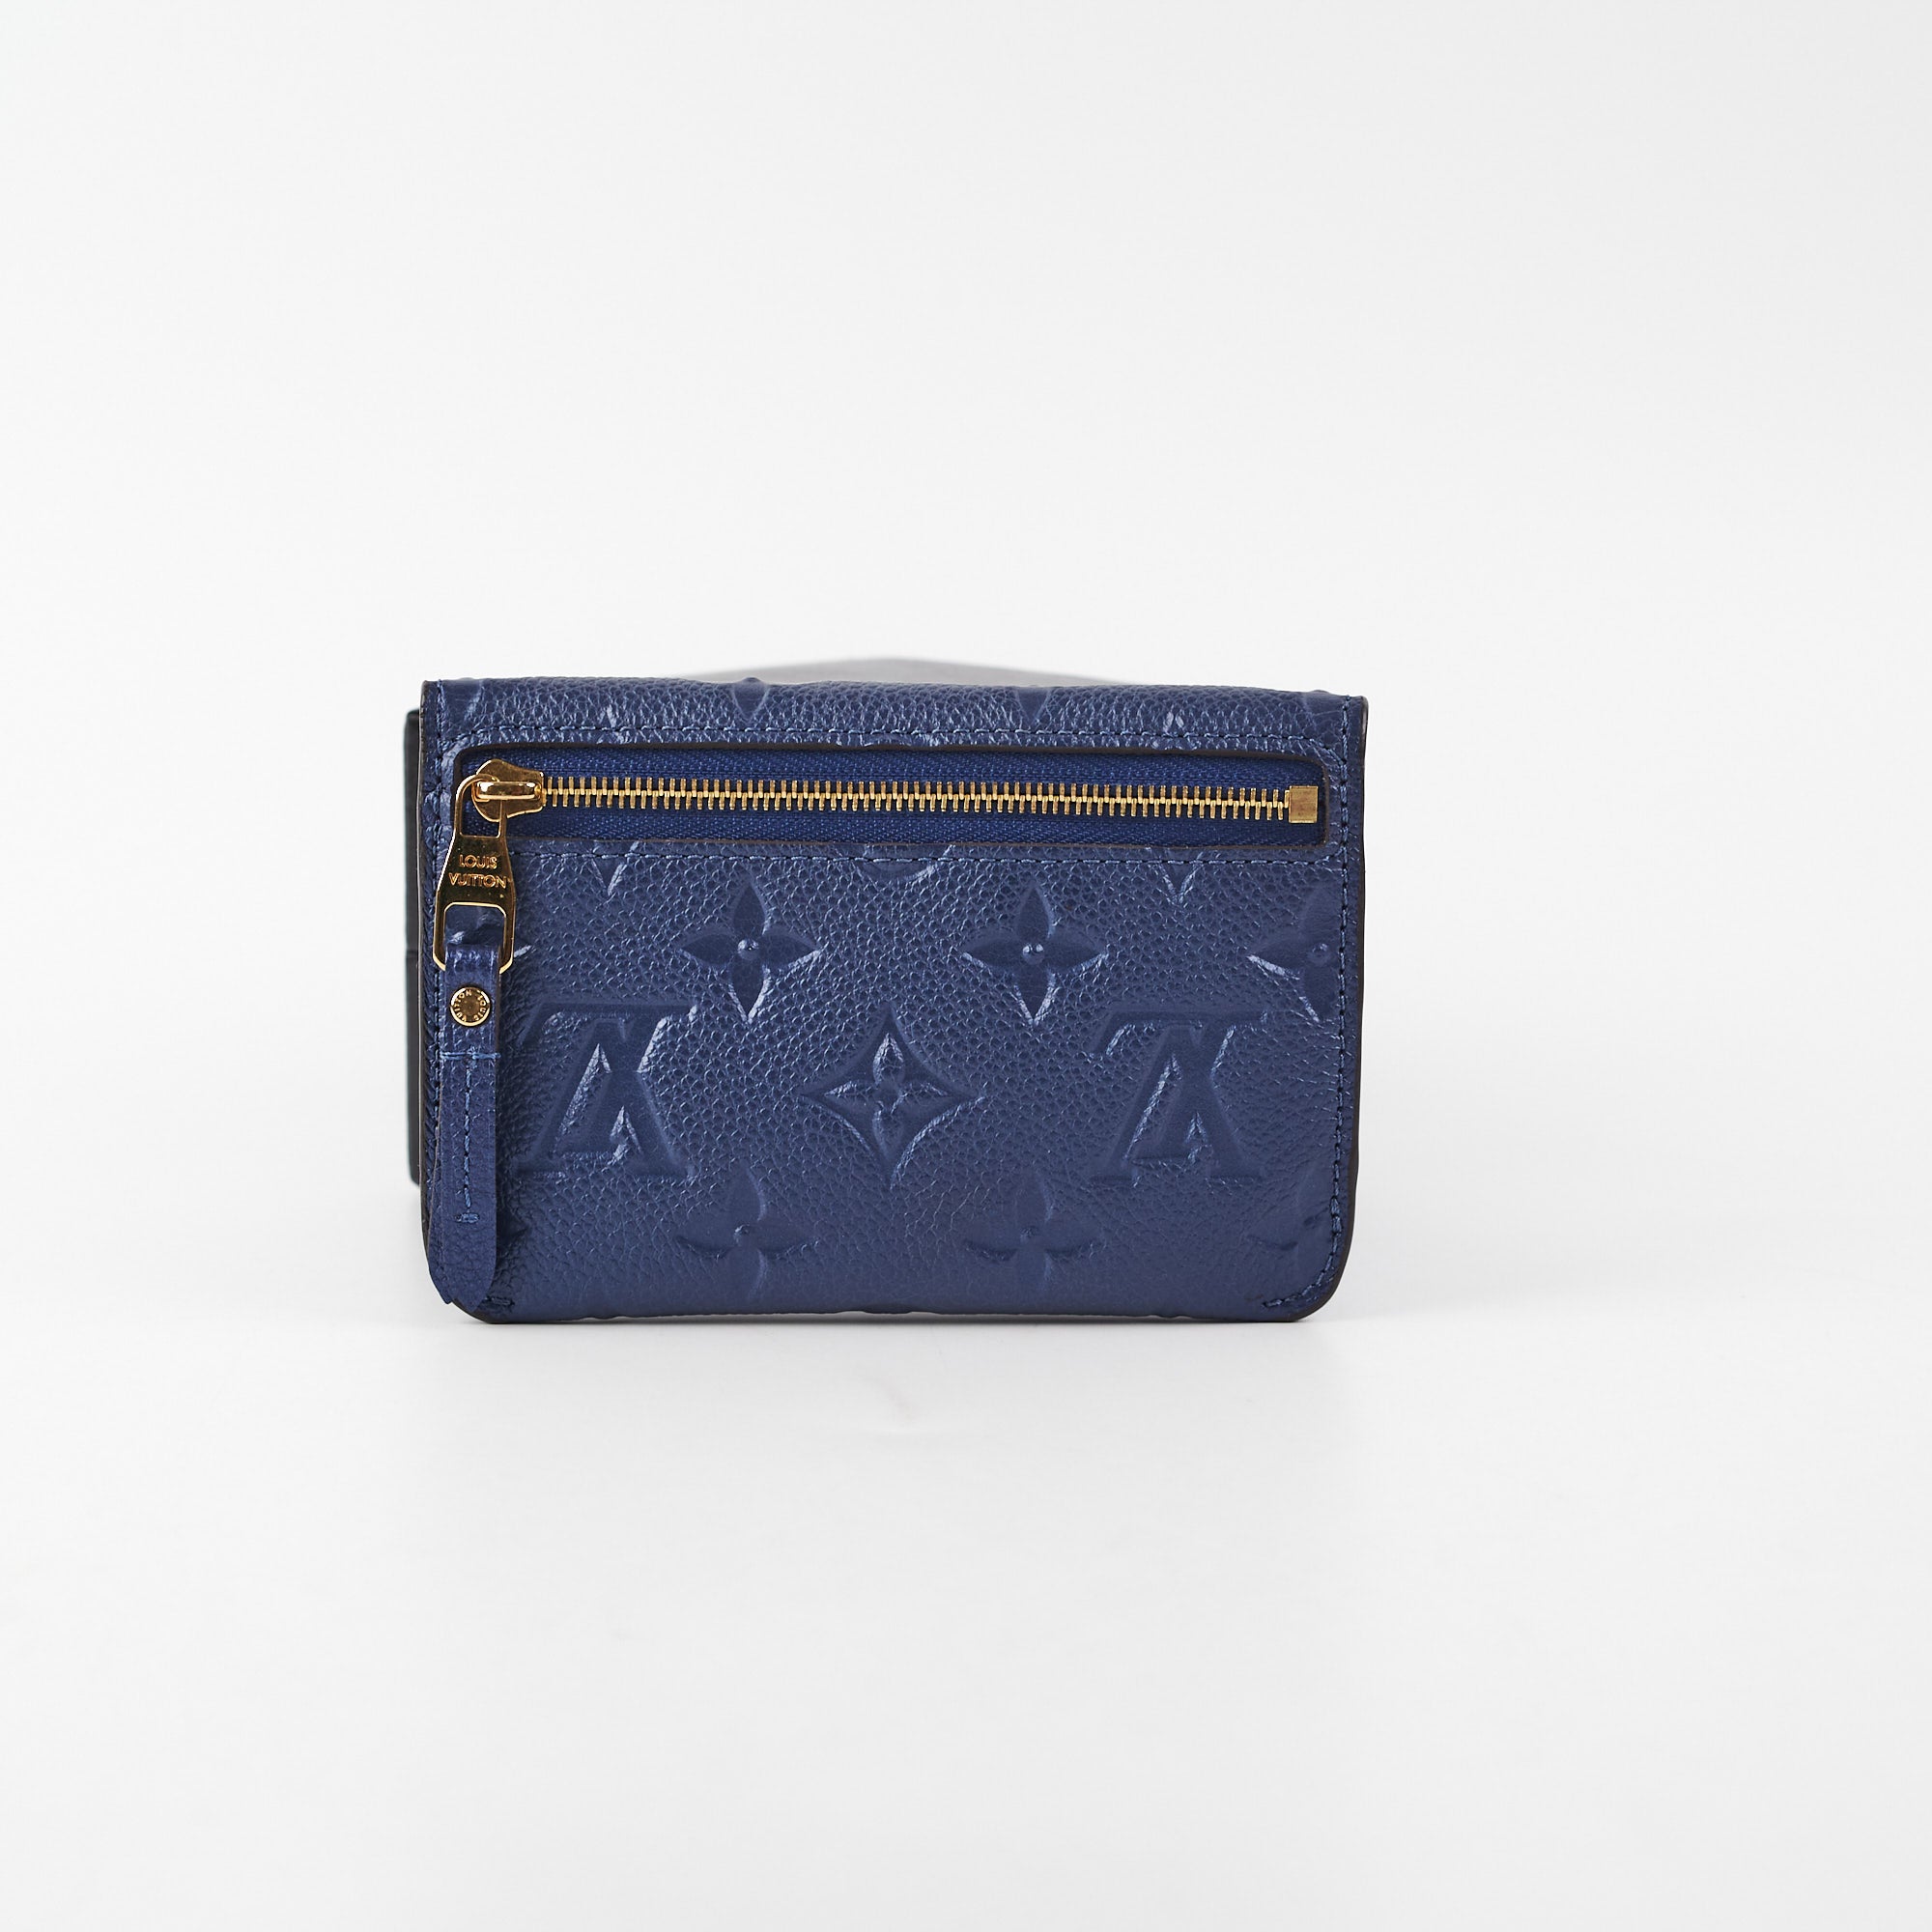 LOUIS VUITTON Key Pouch Empreinte Leather Wallet Blue